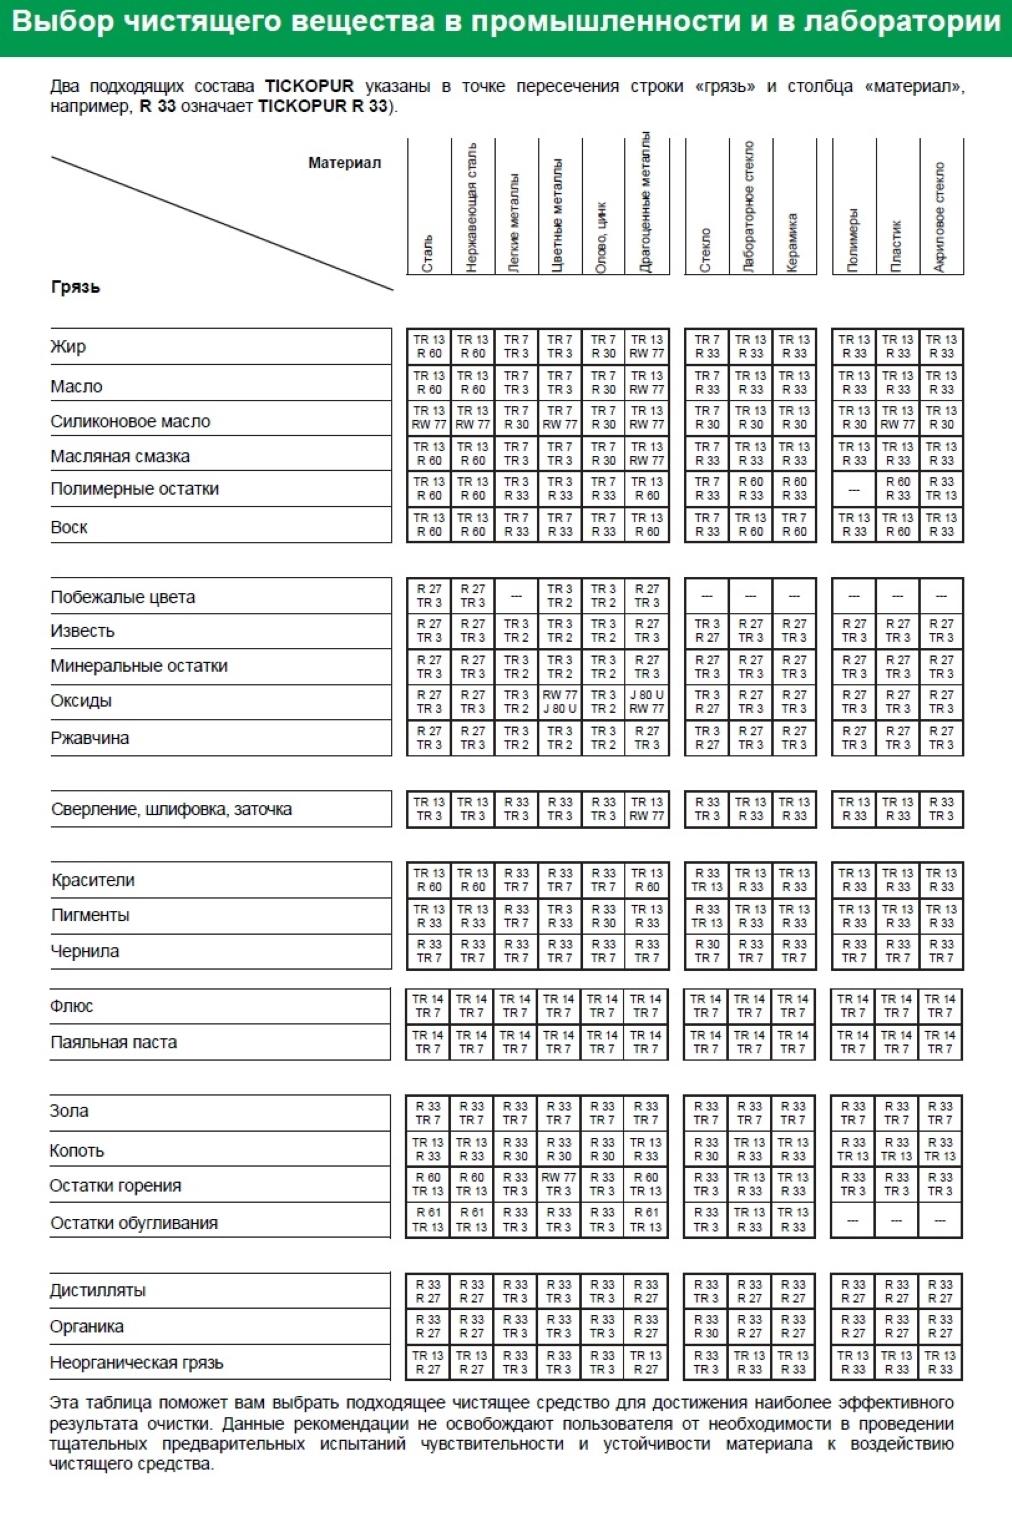 Таблица выбора чистящего вещества R 33 TICKOPUR